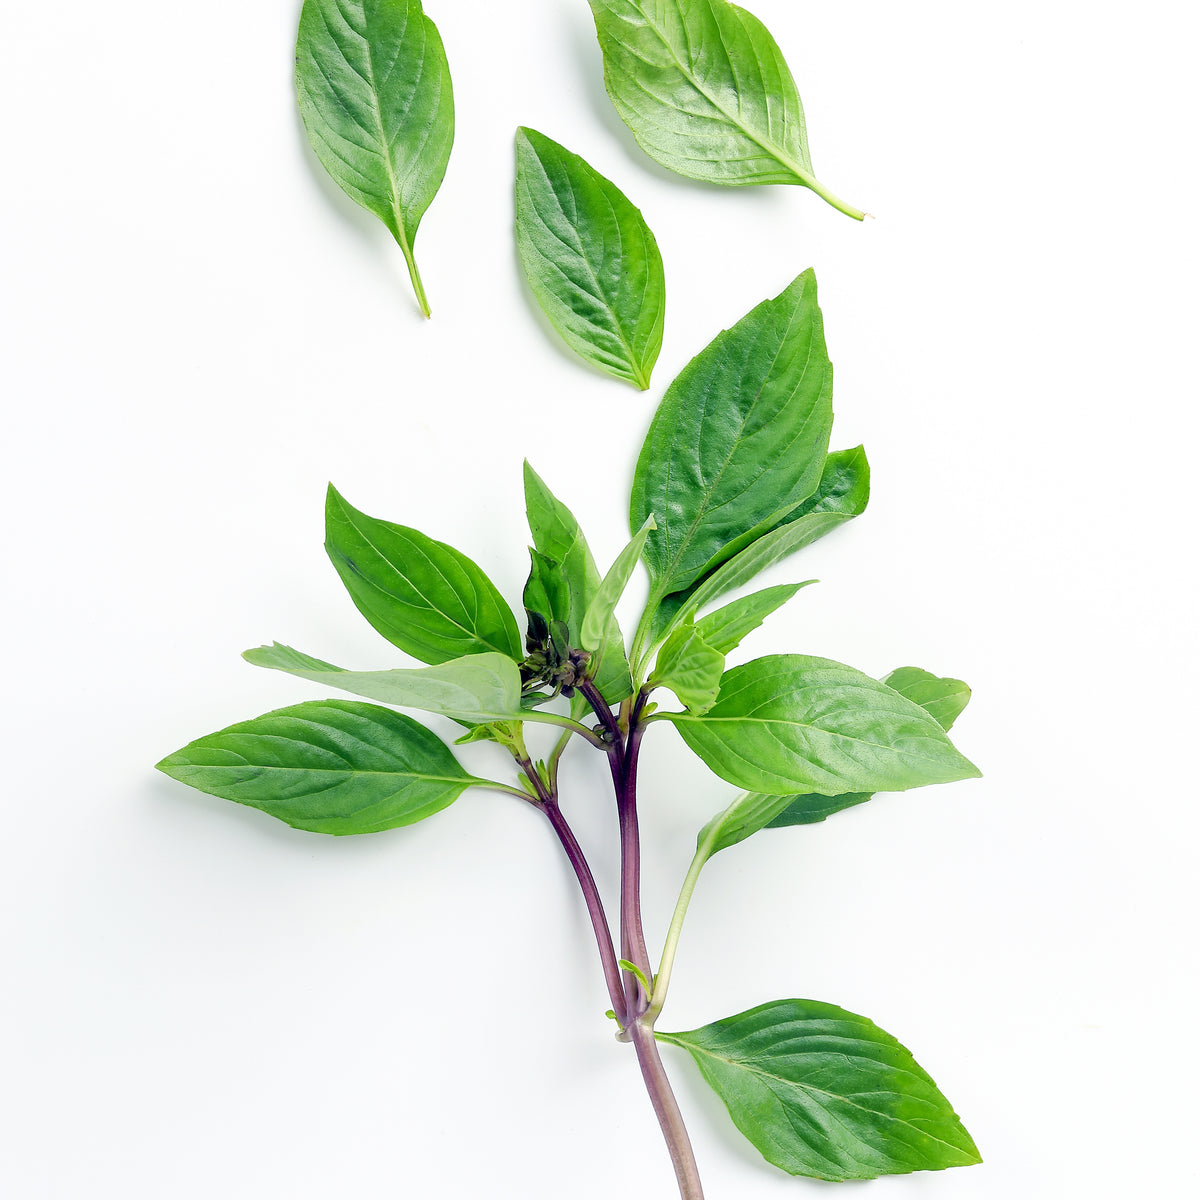 Plant de Basilic Thaï - Plants d'aromatiques